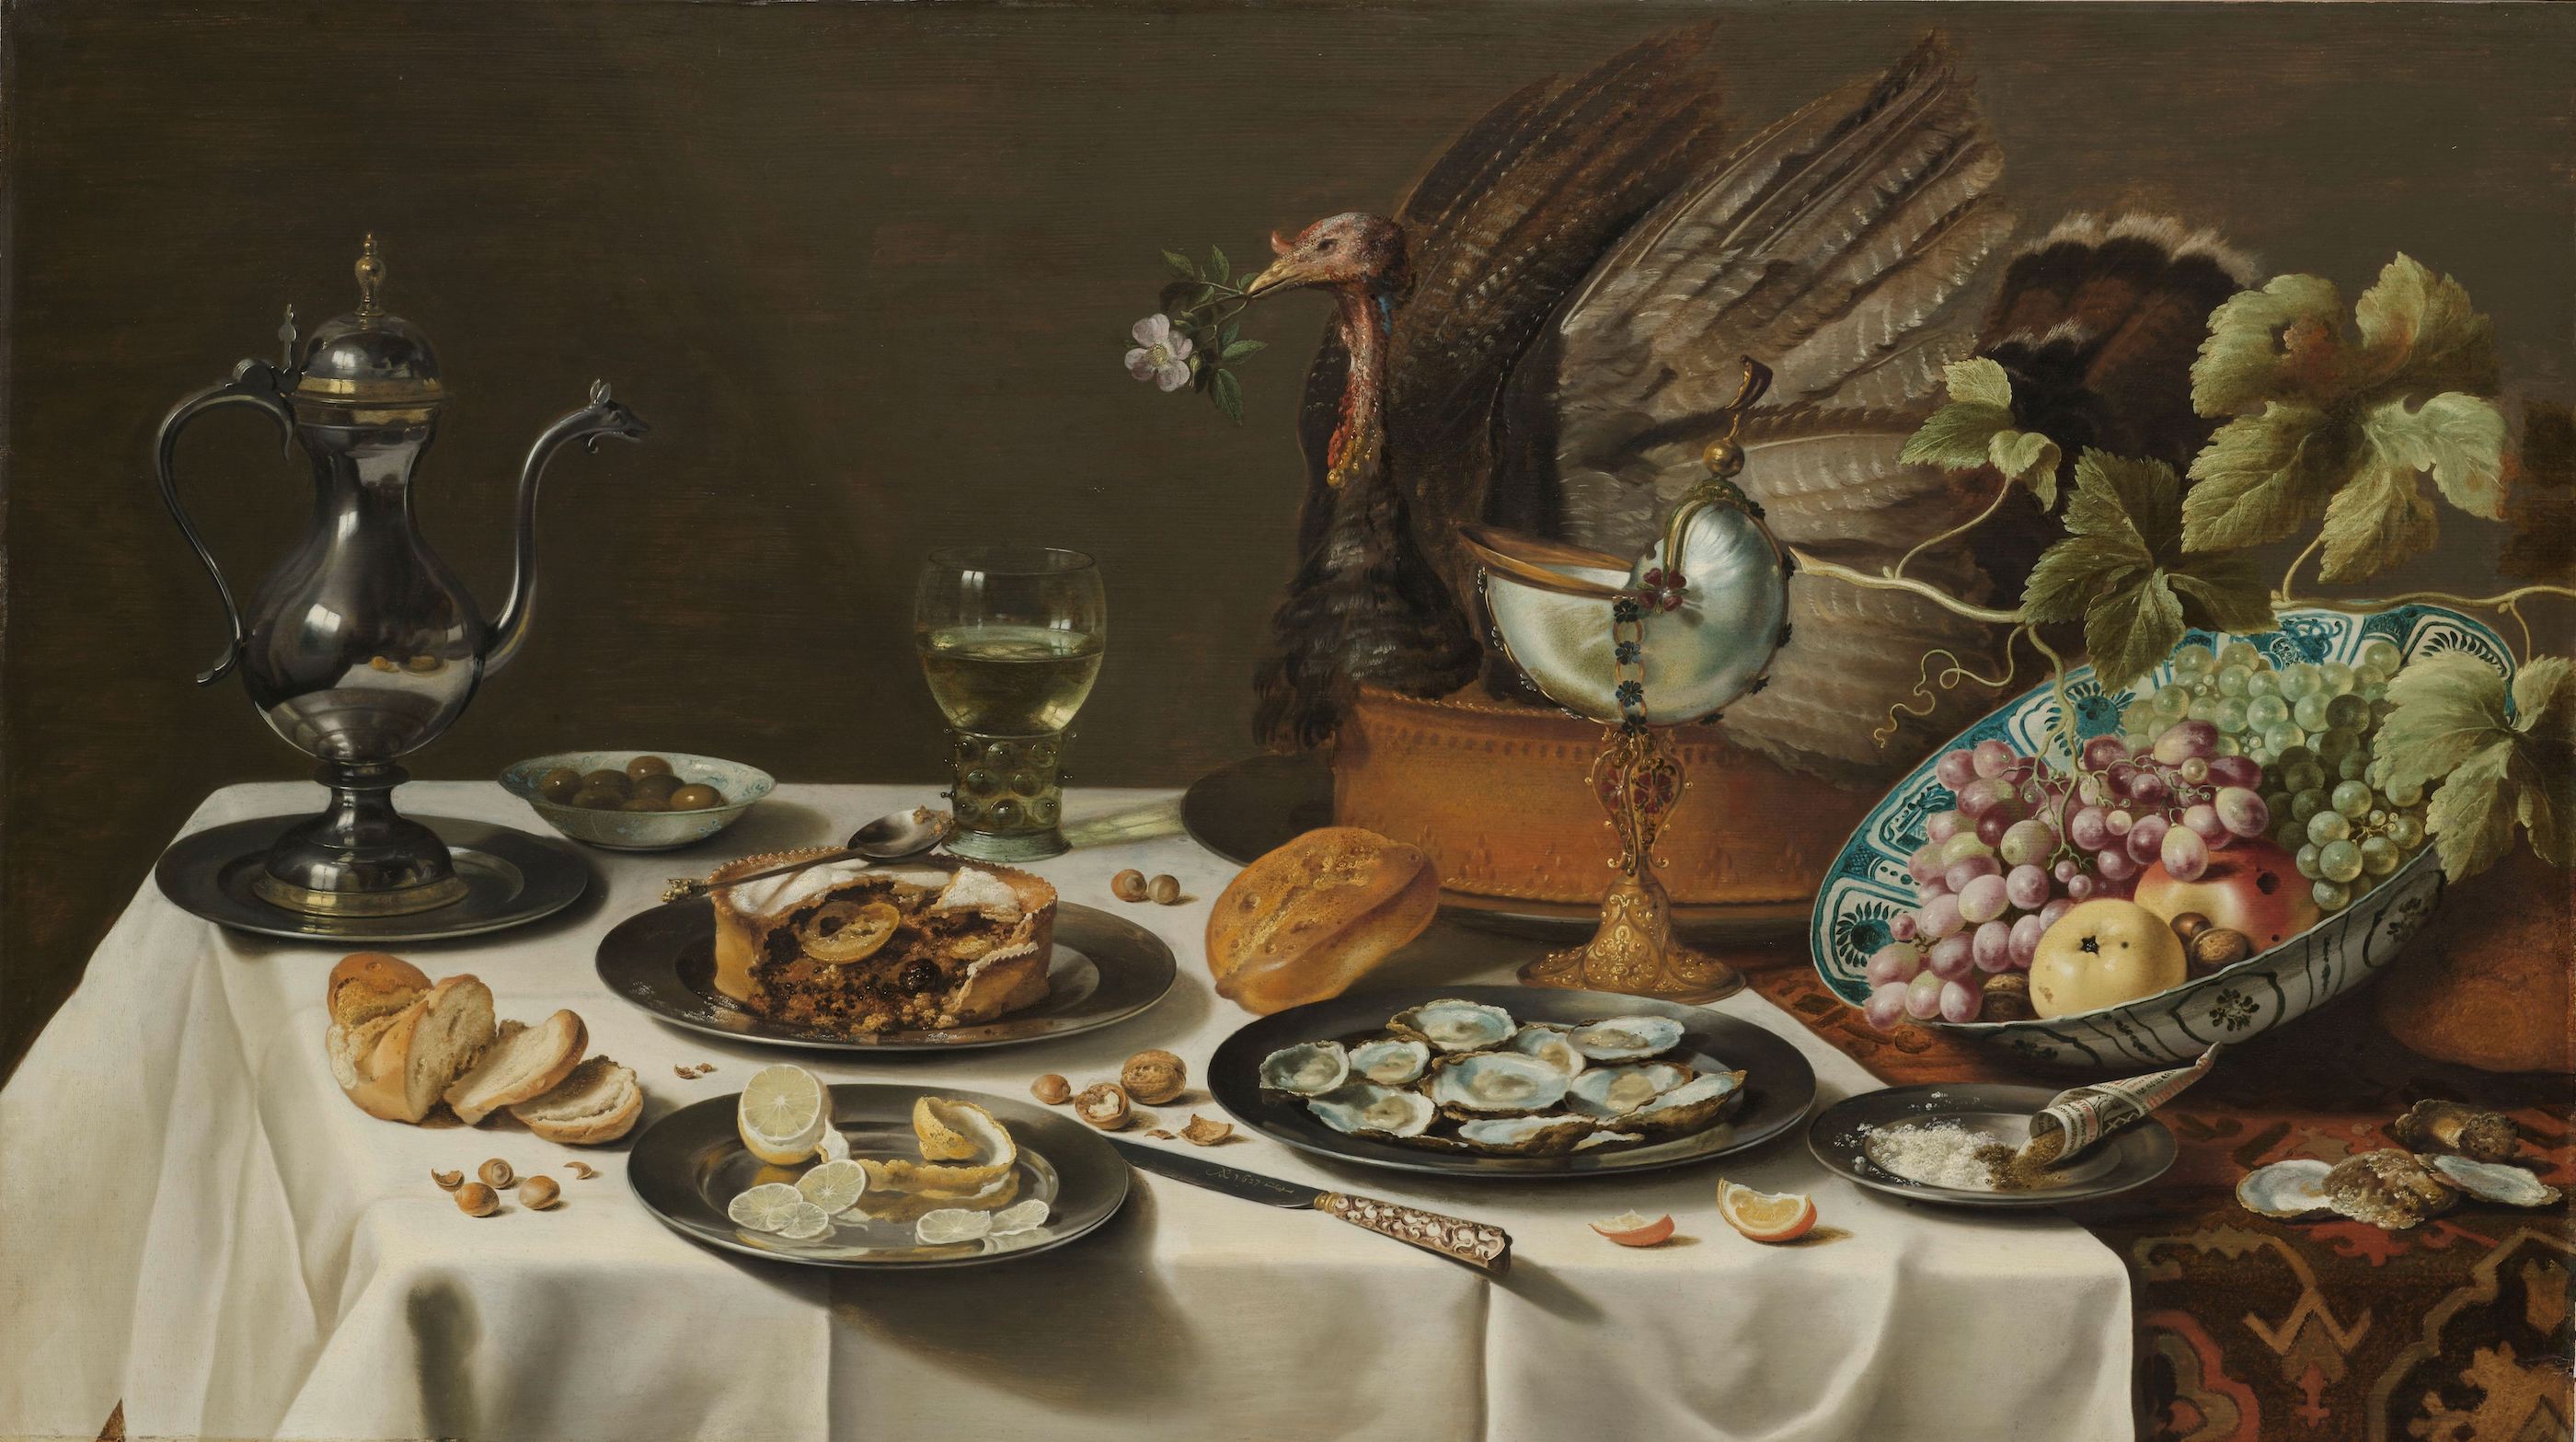 Still Life with a Turkey Pie by Pieter Claesz - 1627 - 75 x 132 cm Rijksmuseum